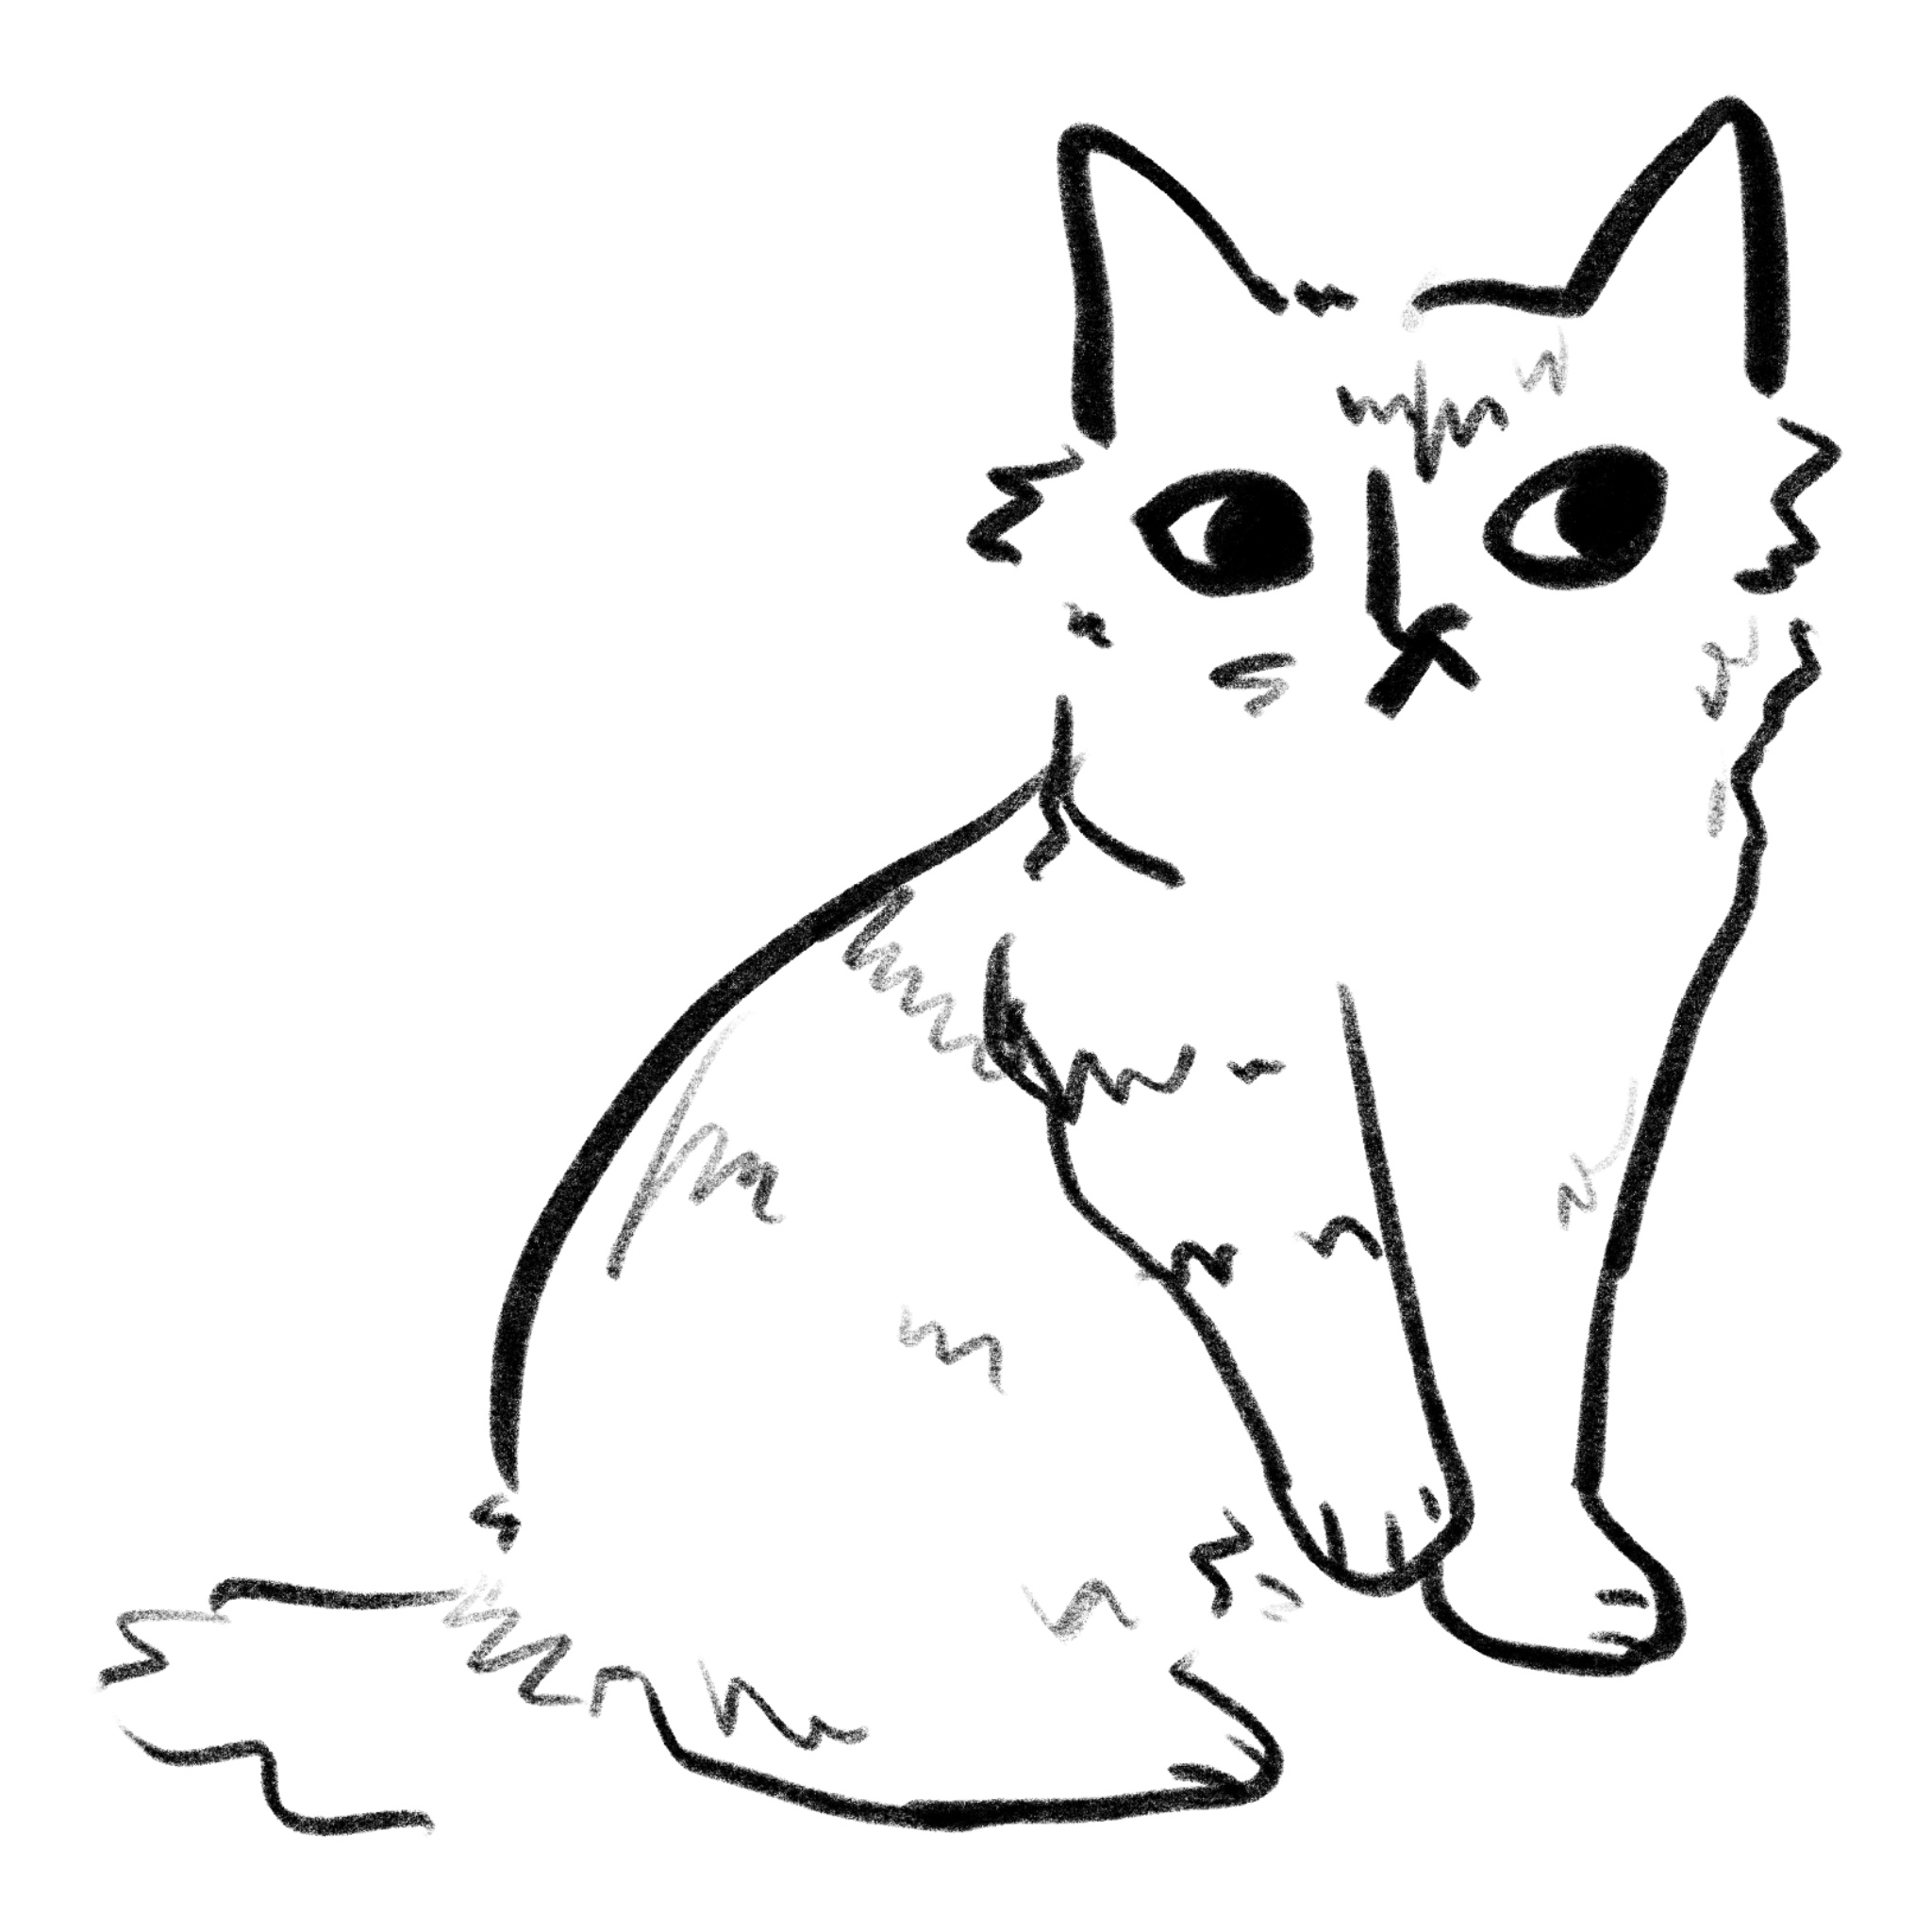 Pixiebob Cat Breed